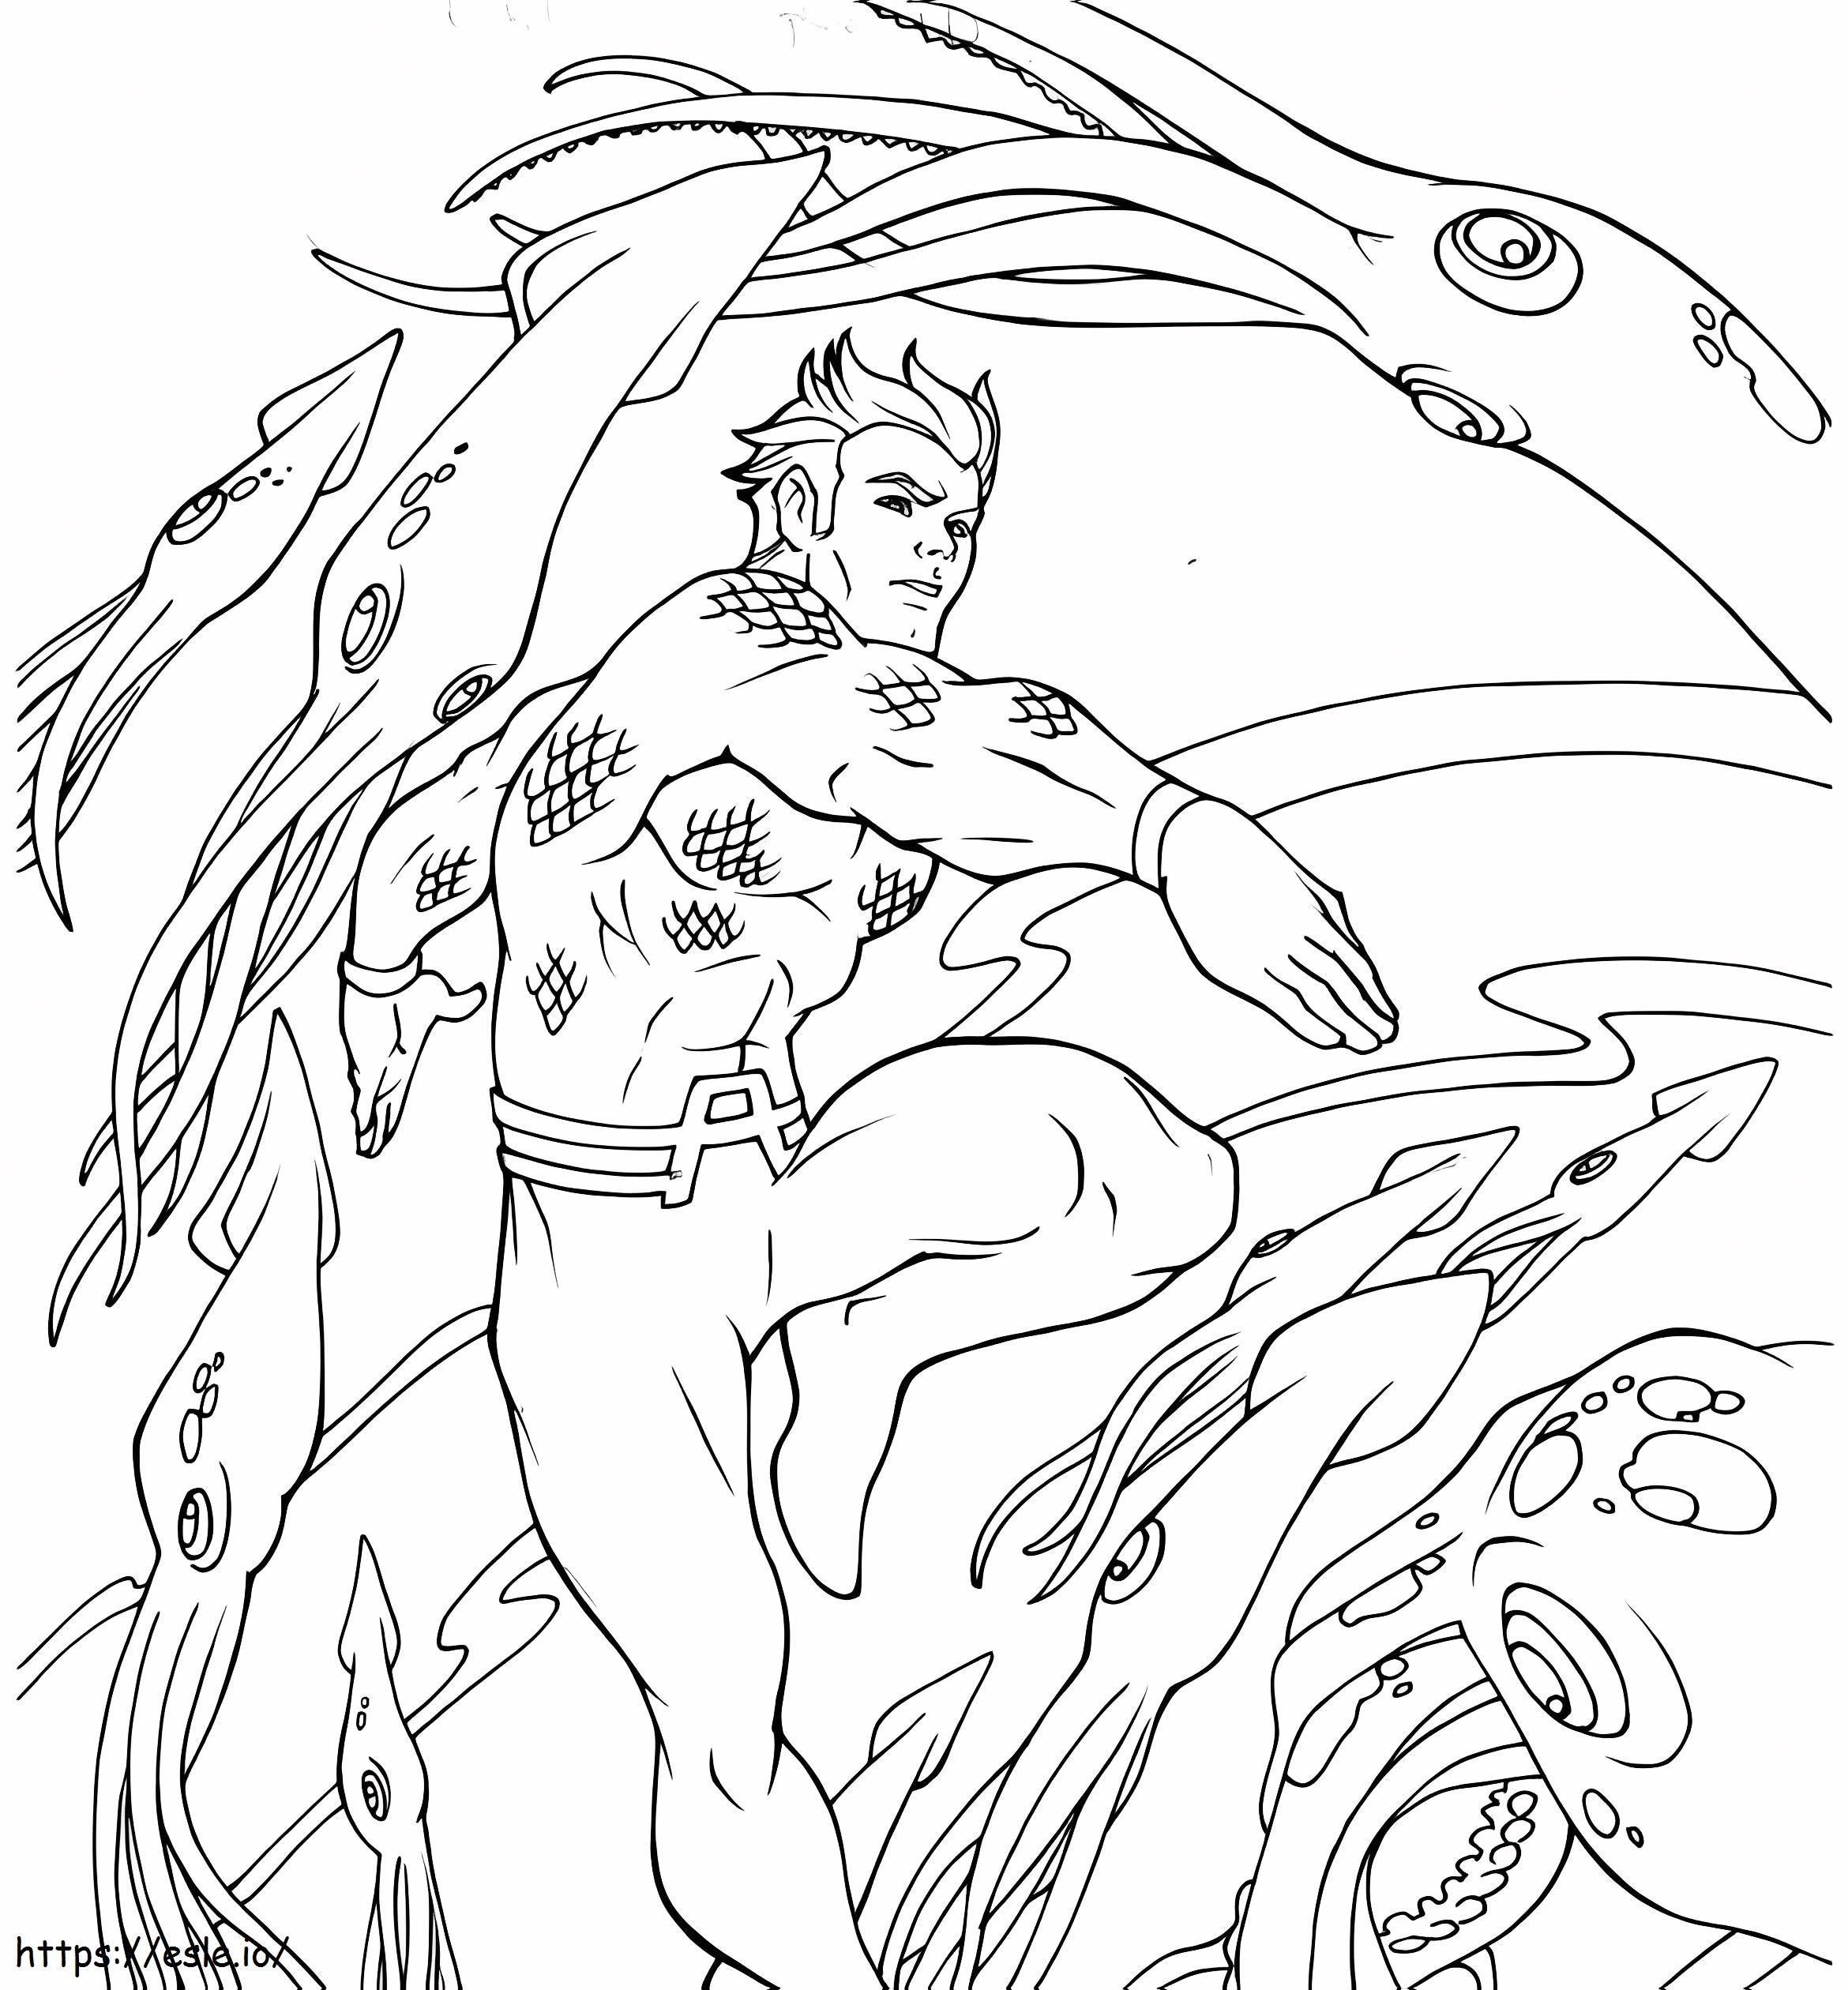 Coloriage Aquaman et Animal Marin à imprimer dessin